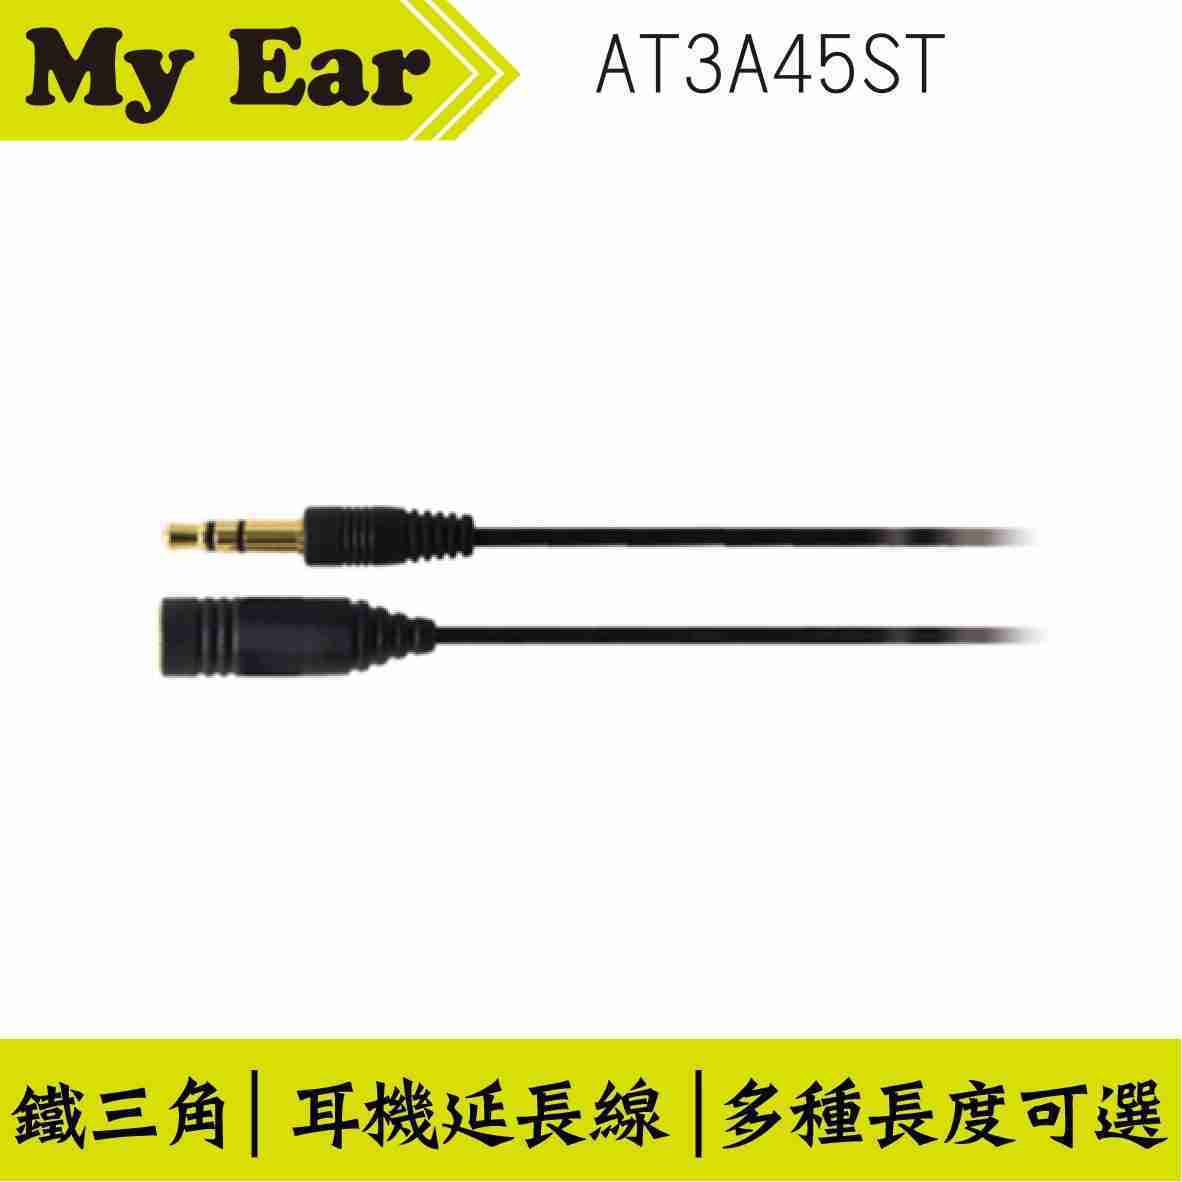 鐵三角 AT3A45ST 直頭 耳機延長線 1.0M | My Ear 耳機專門店